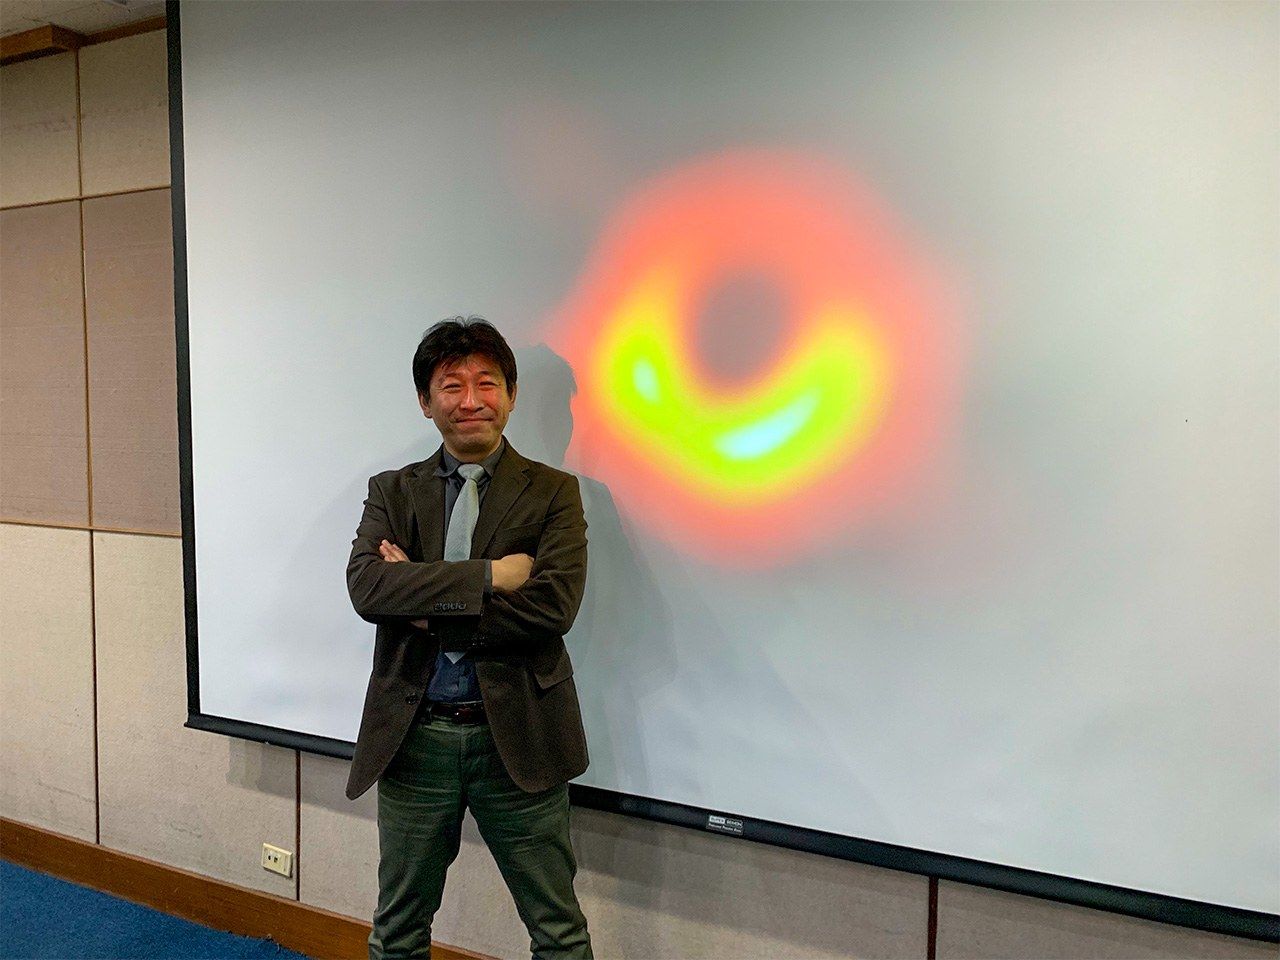 和黑洞拍照的松下聰樹先生。2019年4月10日，世界同步記者會後的照片